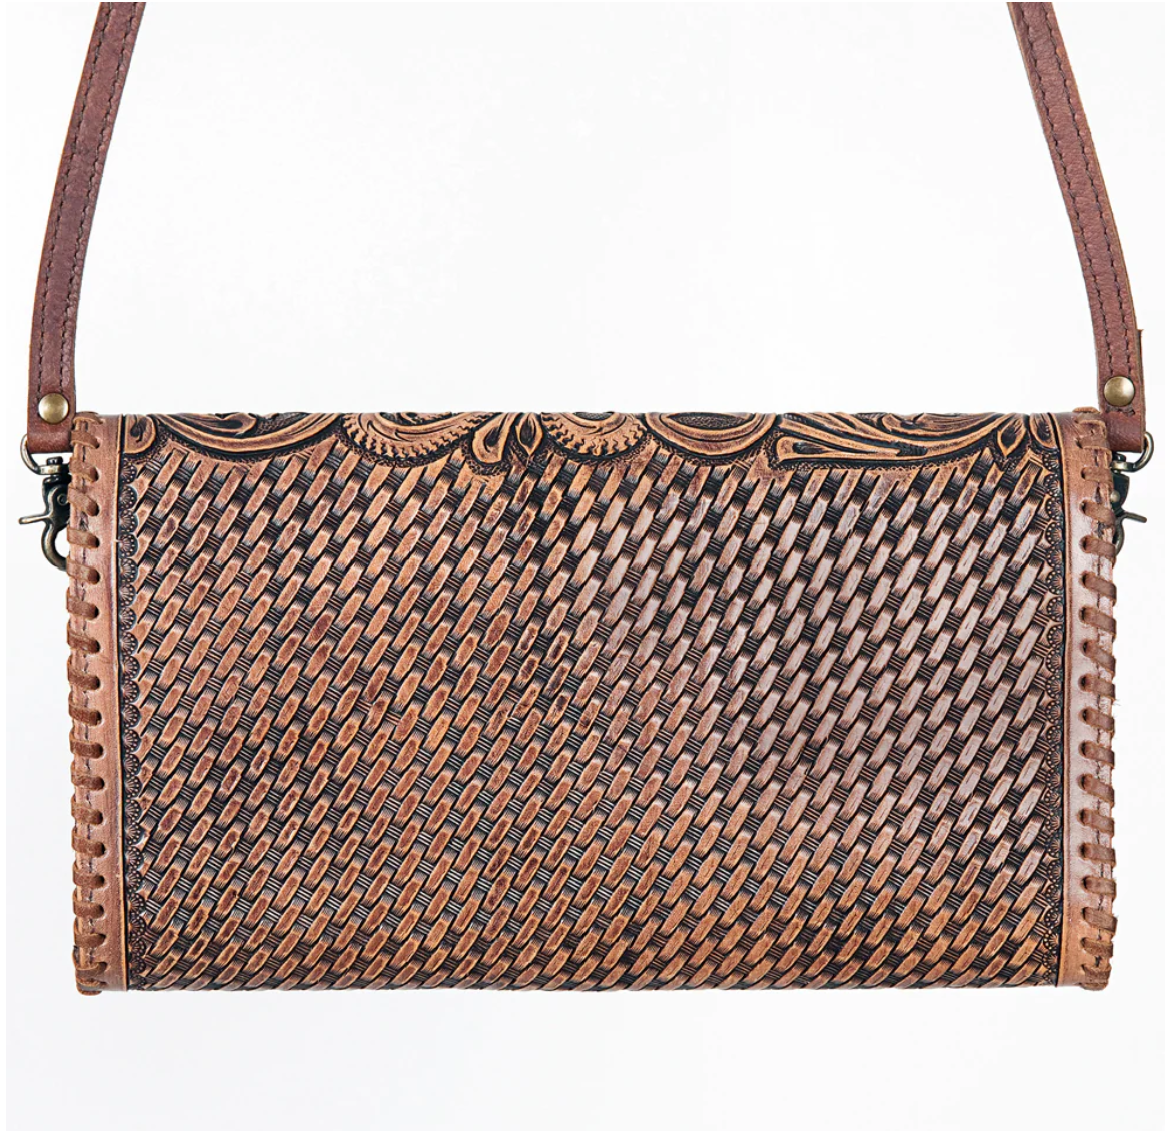 ADBG395BR USA Aiyana Tooled Leather Handbag